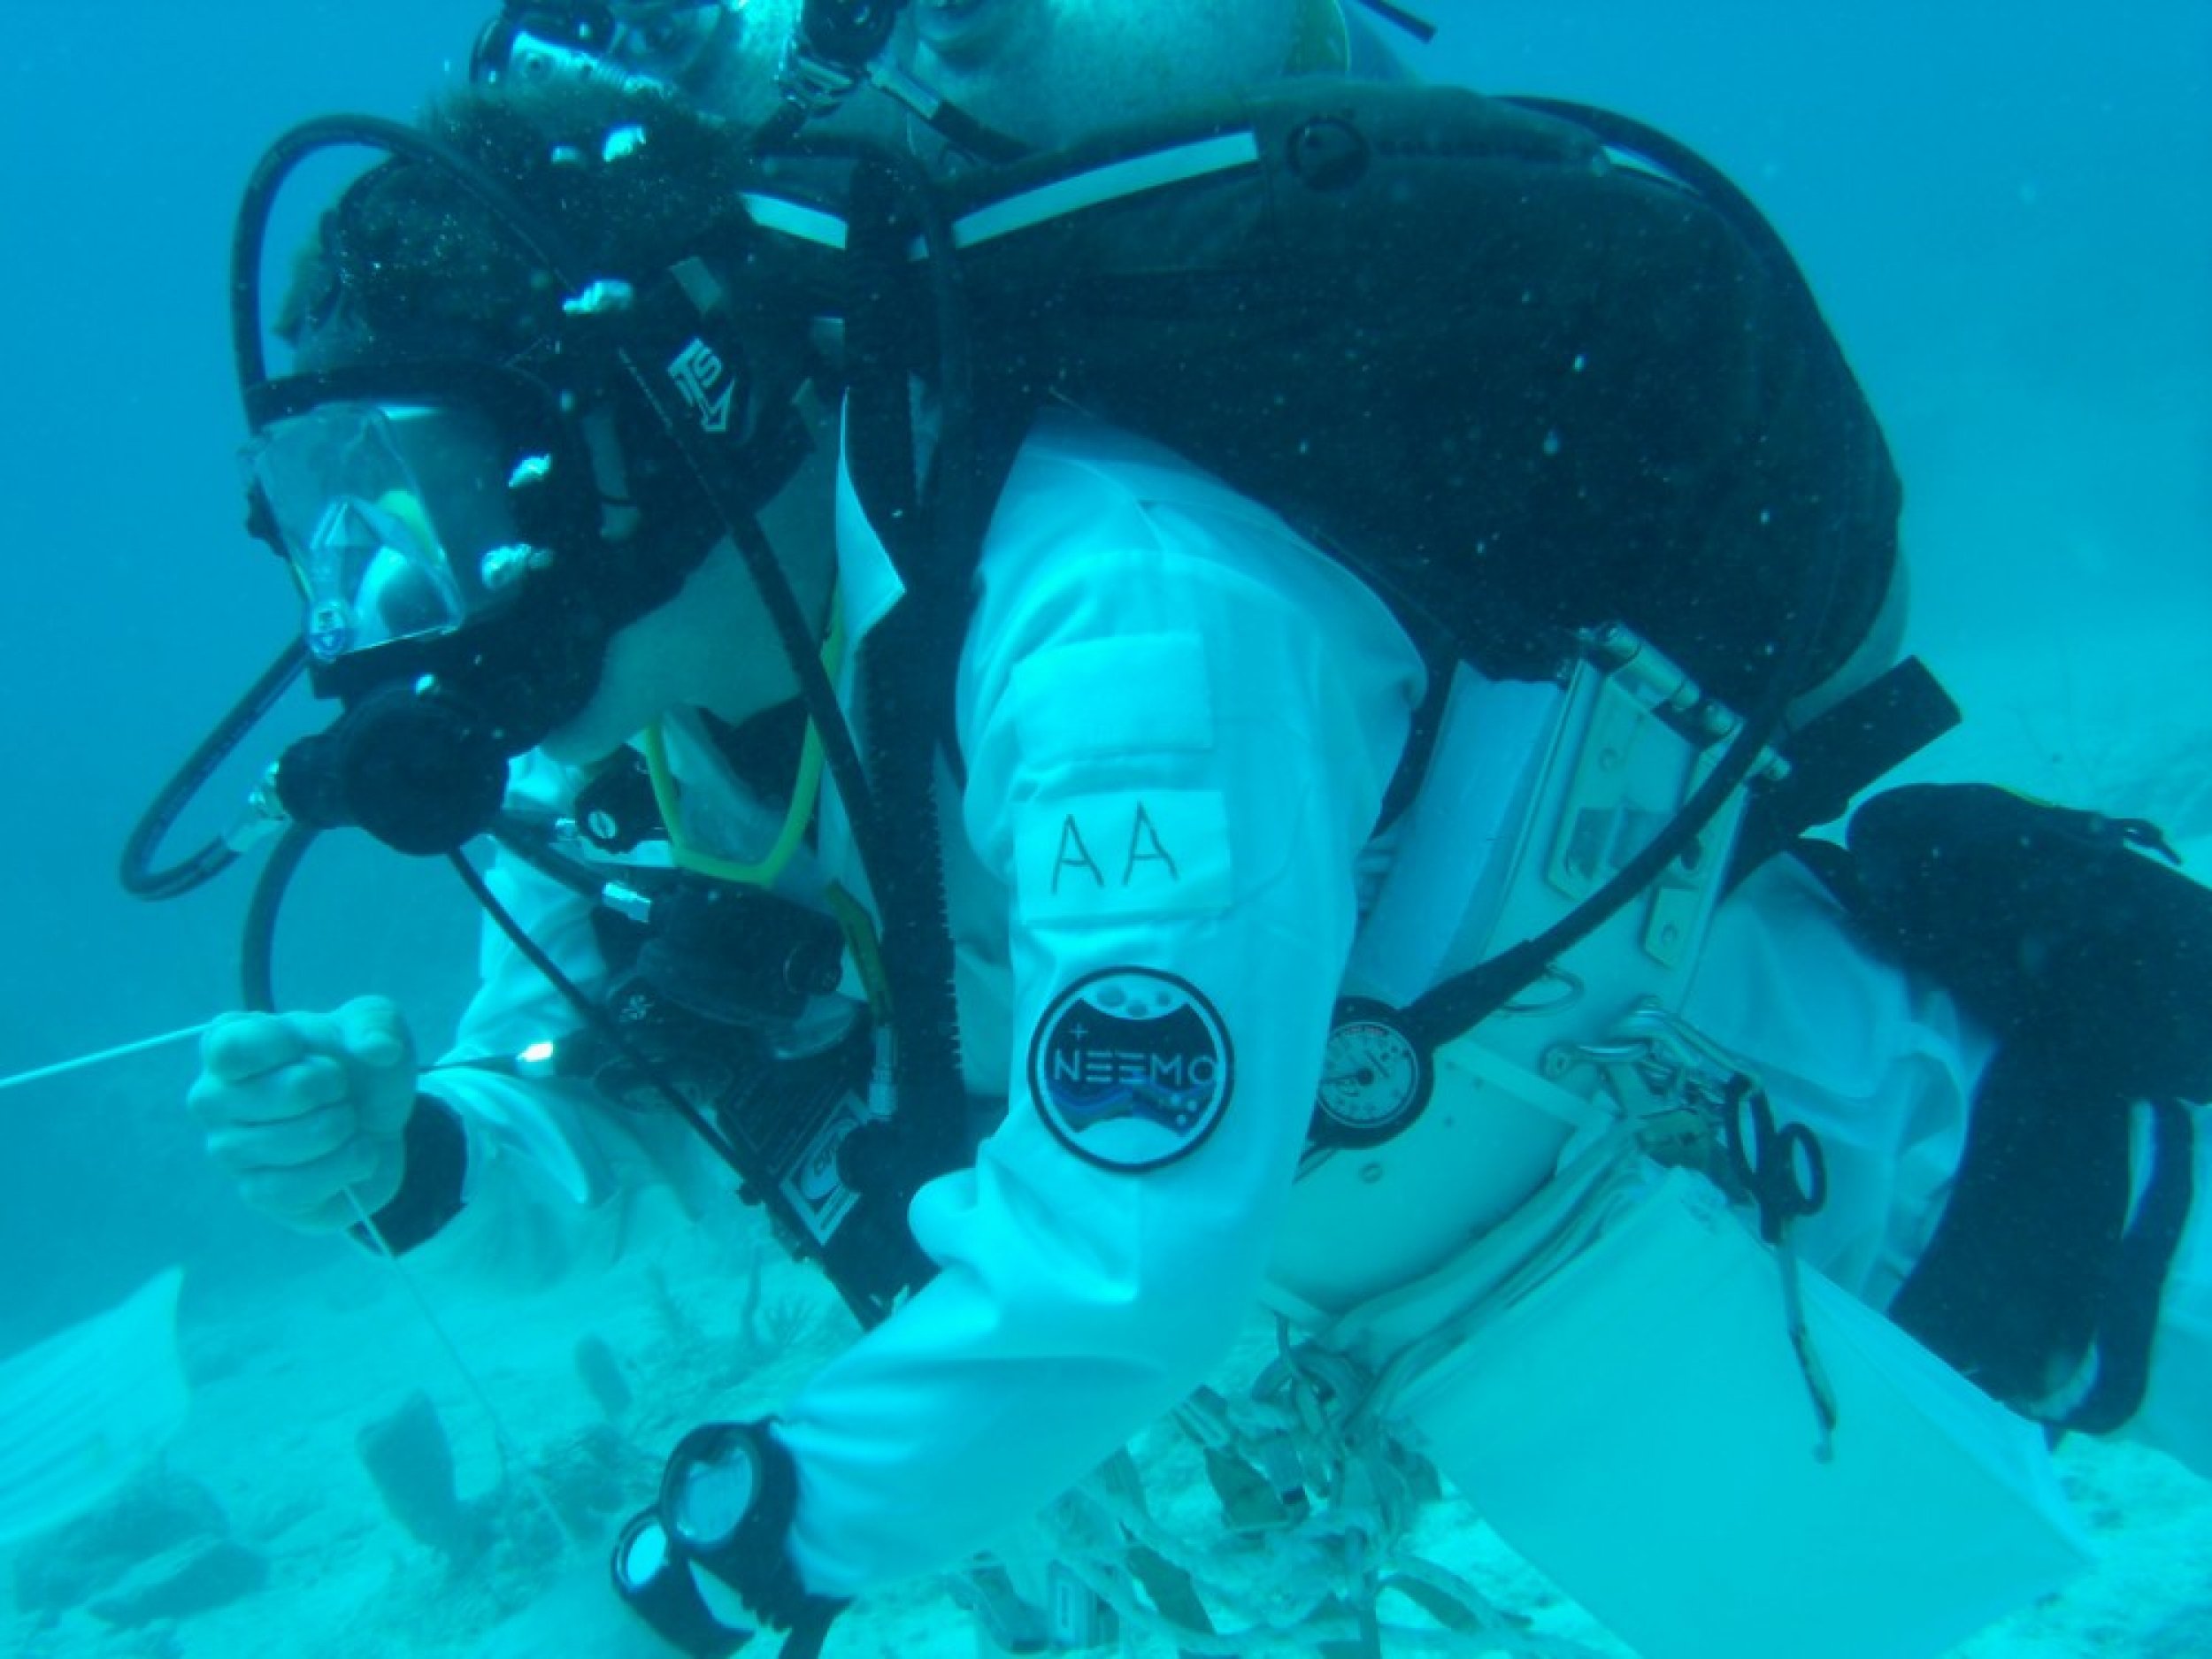 NEEMO engineering crew diver